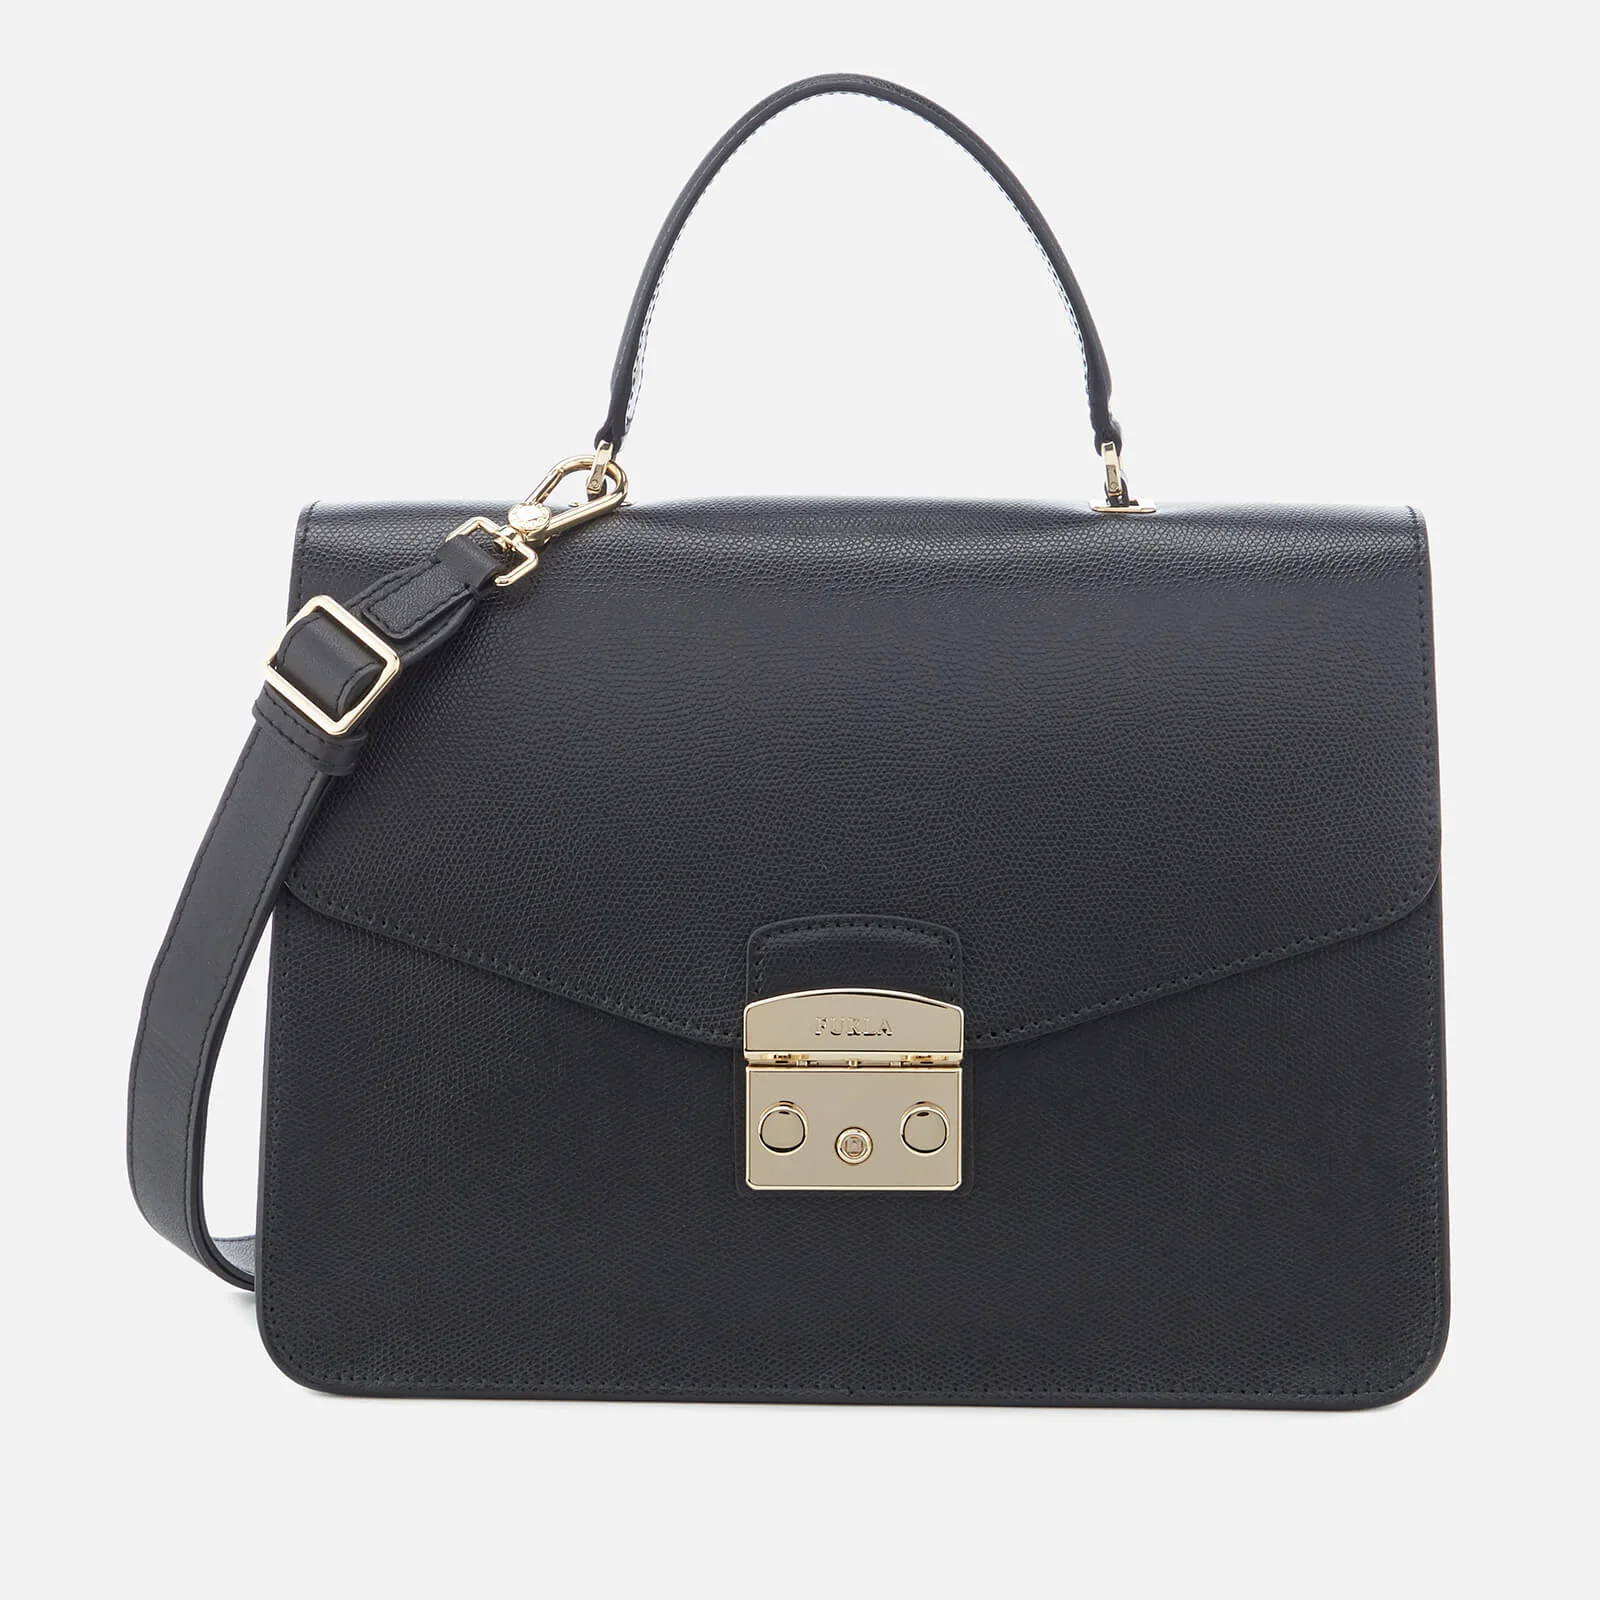 Furla Women's Metropolis Medium Top Handle Bag - Black Image 1